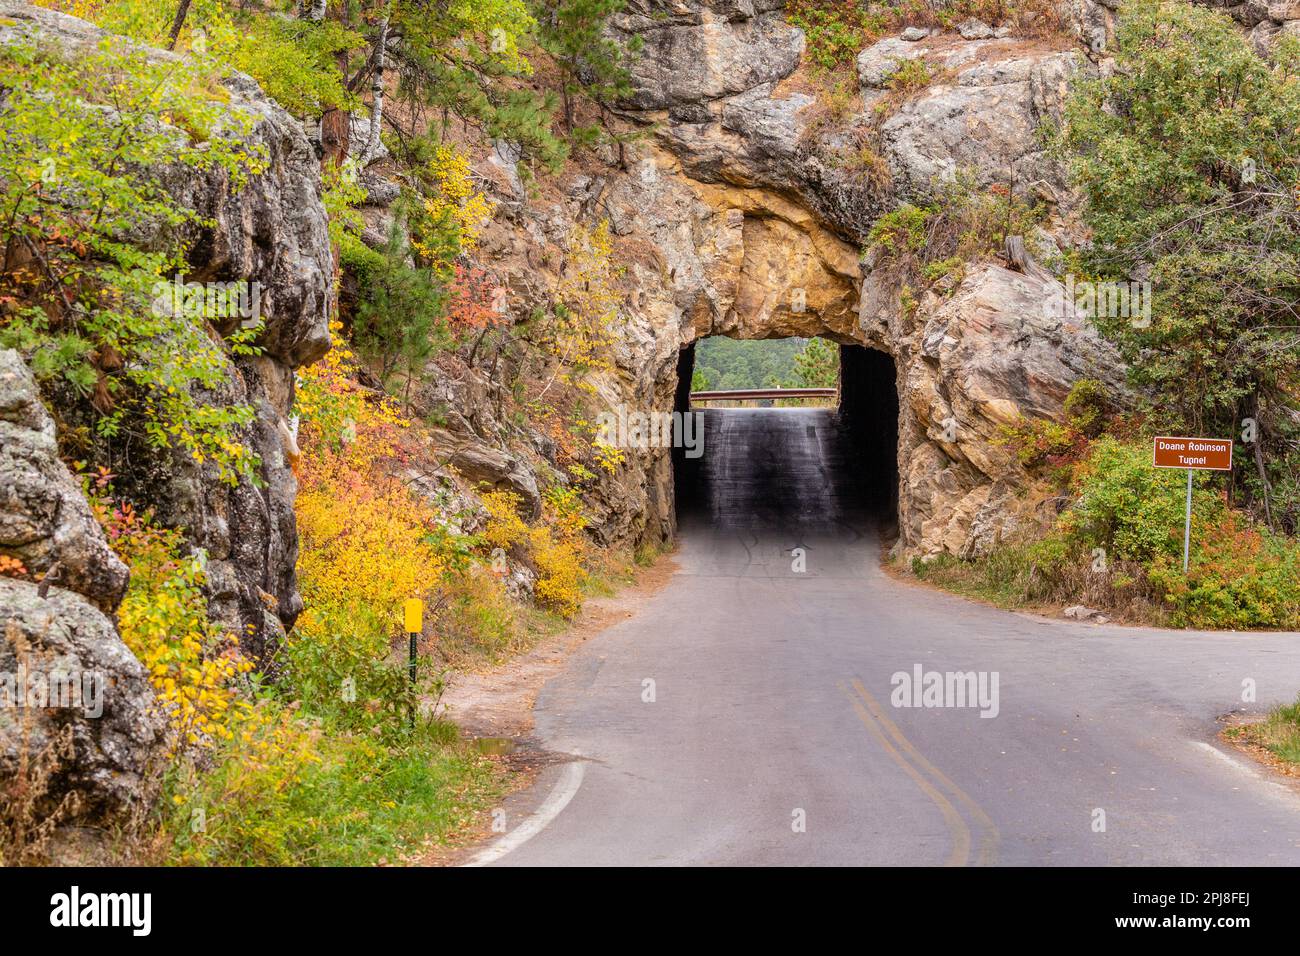 Tunnel Doane Robinson le long de la route panoramique Iron Mountain, entre Mount Rushmore et le parc national Custer, Dakota du Sud, États-Unis d'Amérique Banque D'Images